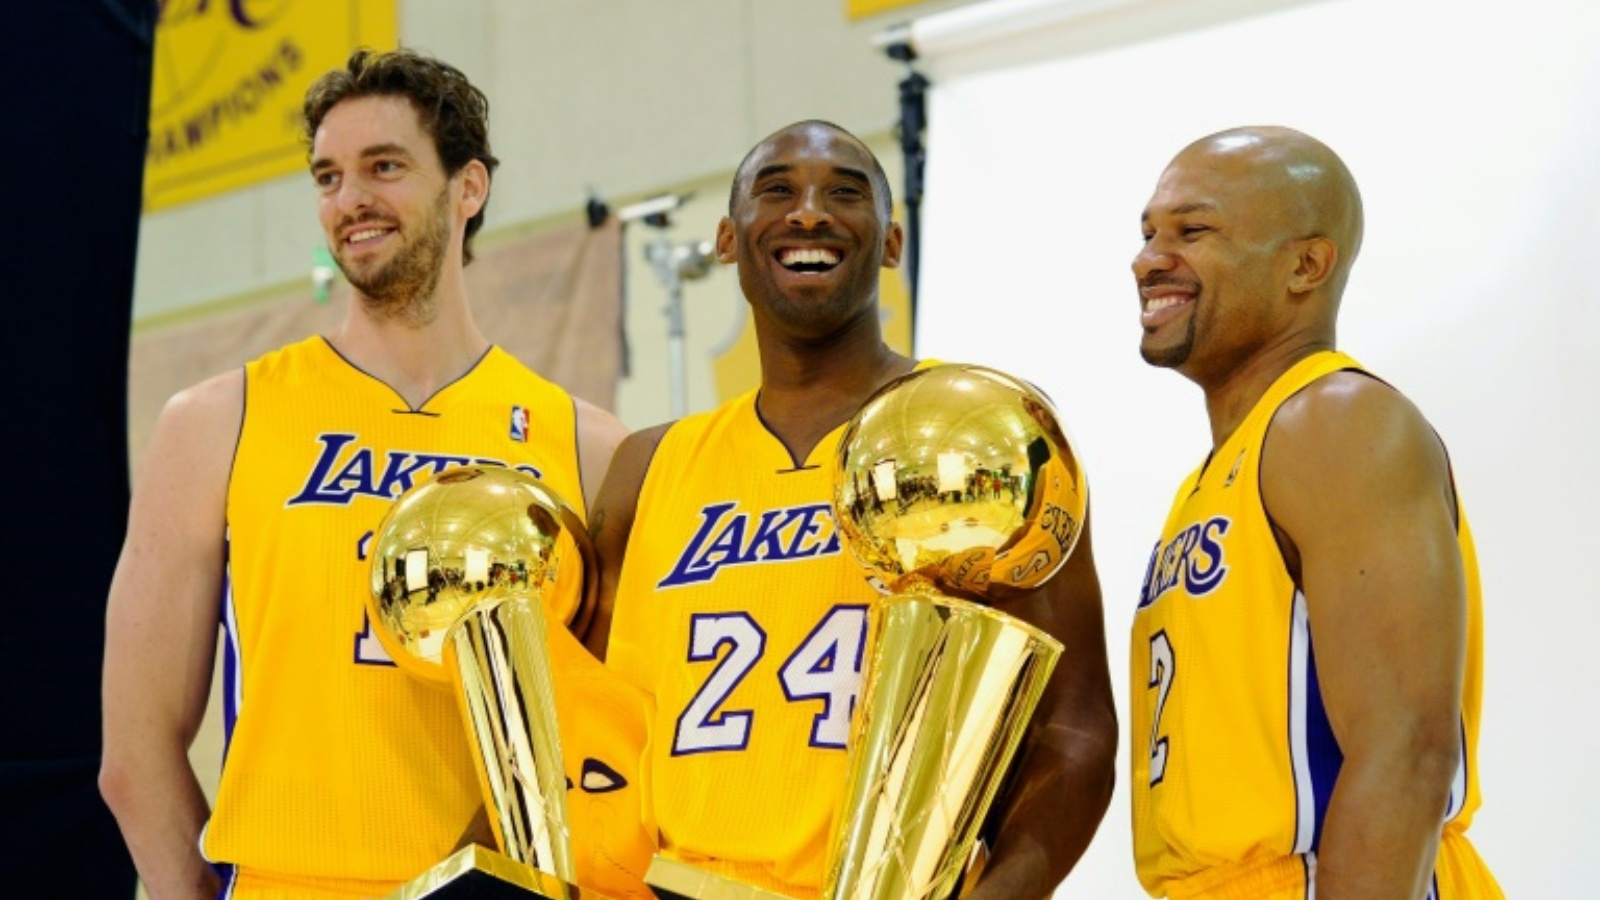 باو غاسول (يسار)، كوبي براينت (وسط) وديرك فيشر بعد فوز لوس أنجليس ليكيرز بلقب الدوري الأميركي للمحترفين في كرة السلة عام 2010.